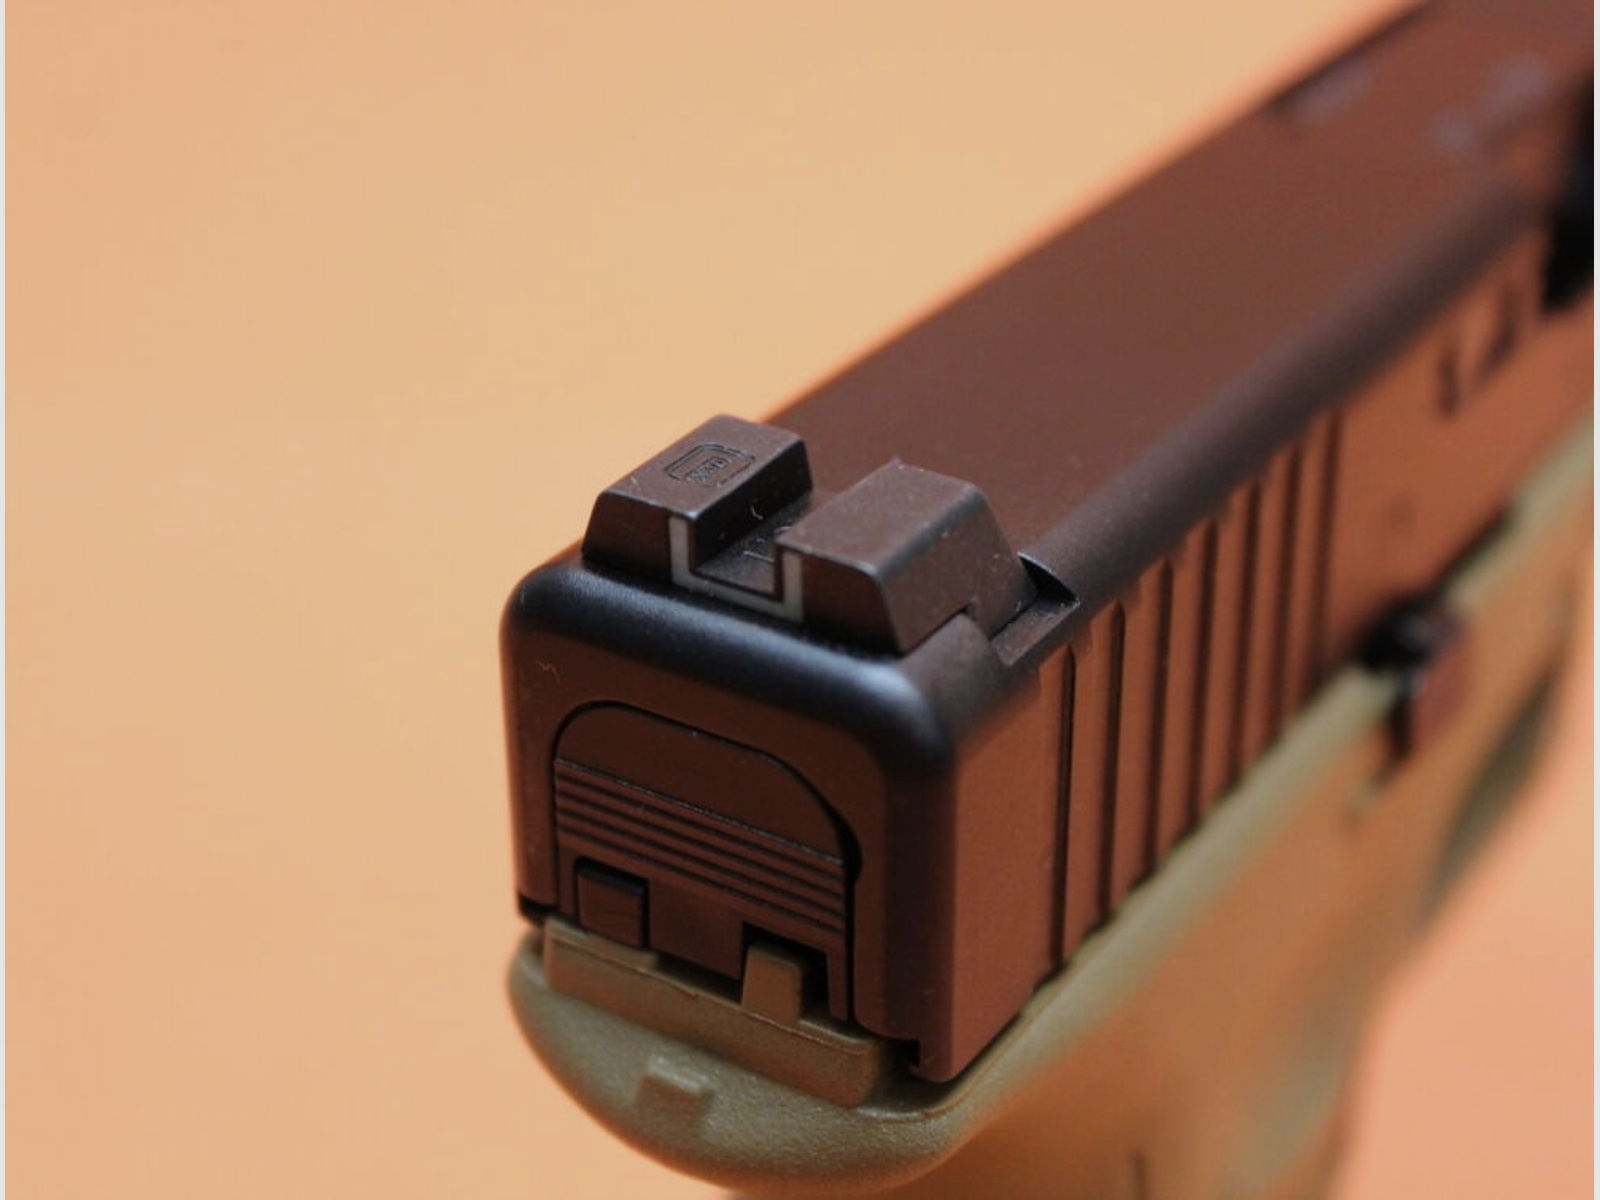 Glock	 Ha.Pistole 9mmLuger Glock17 Gen5 FR COYOTE 114mm Lauf/ Front Serrations für Frankreich(9mmPara/9x19)